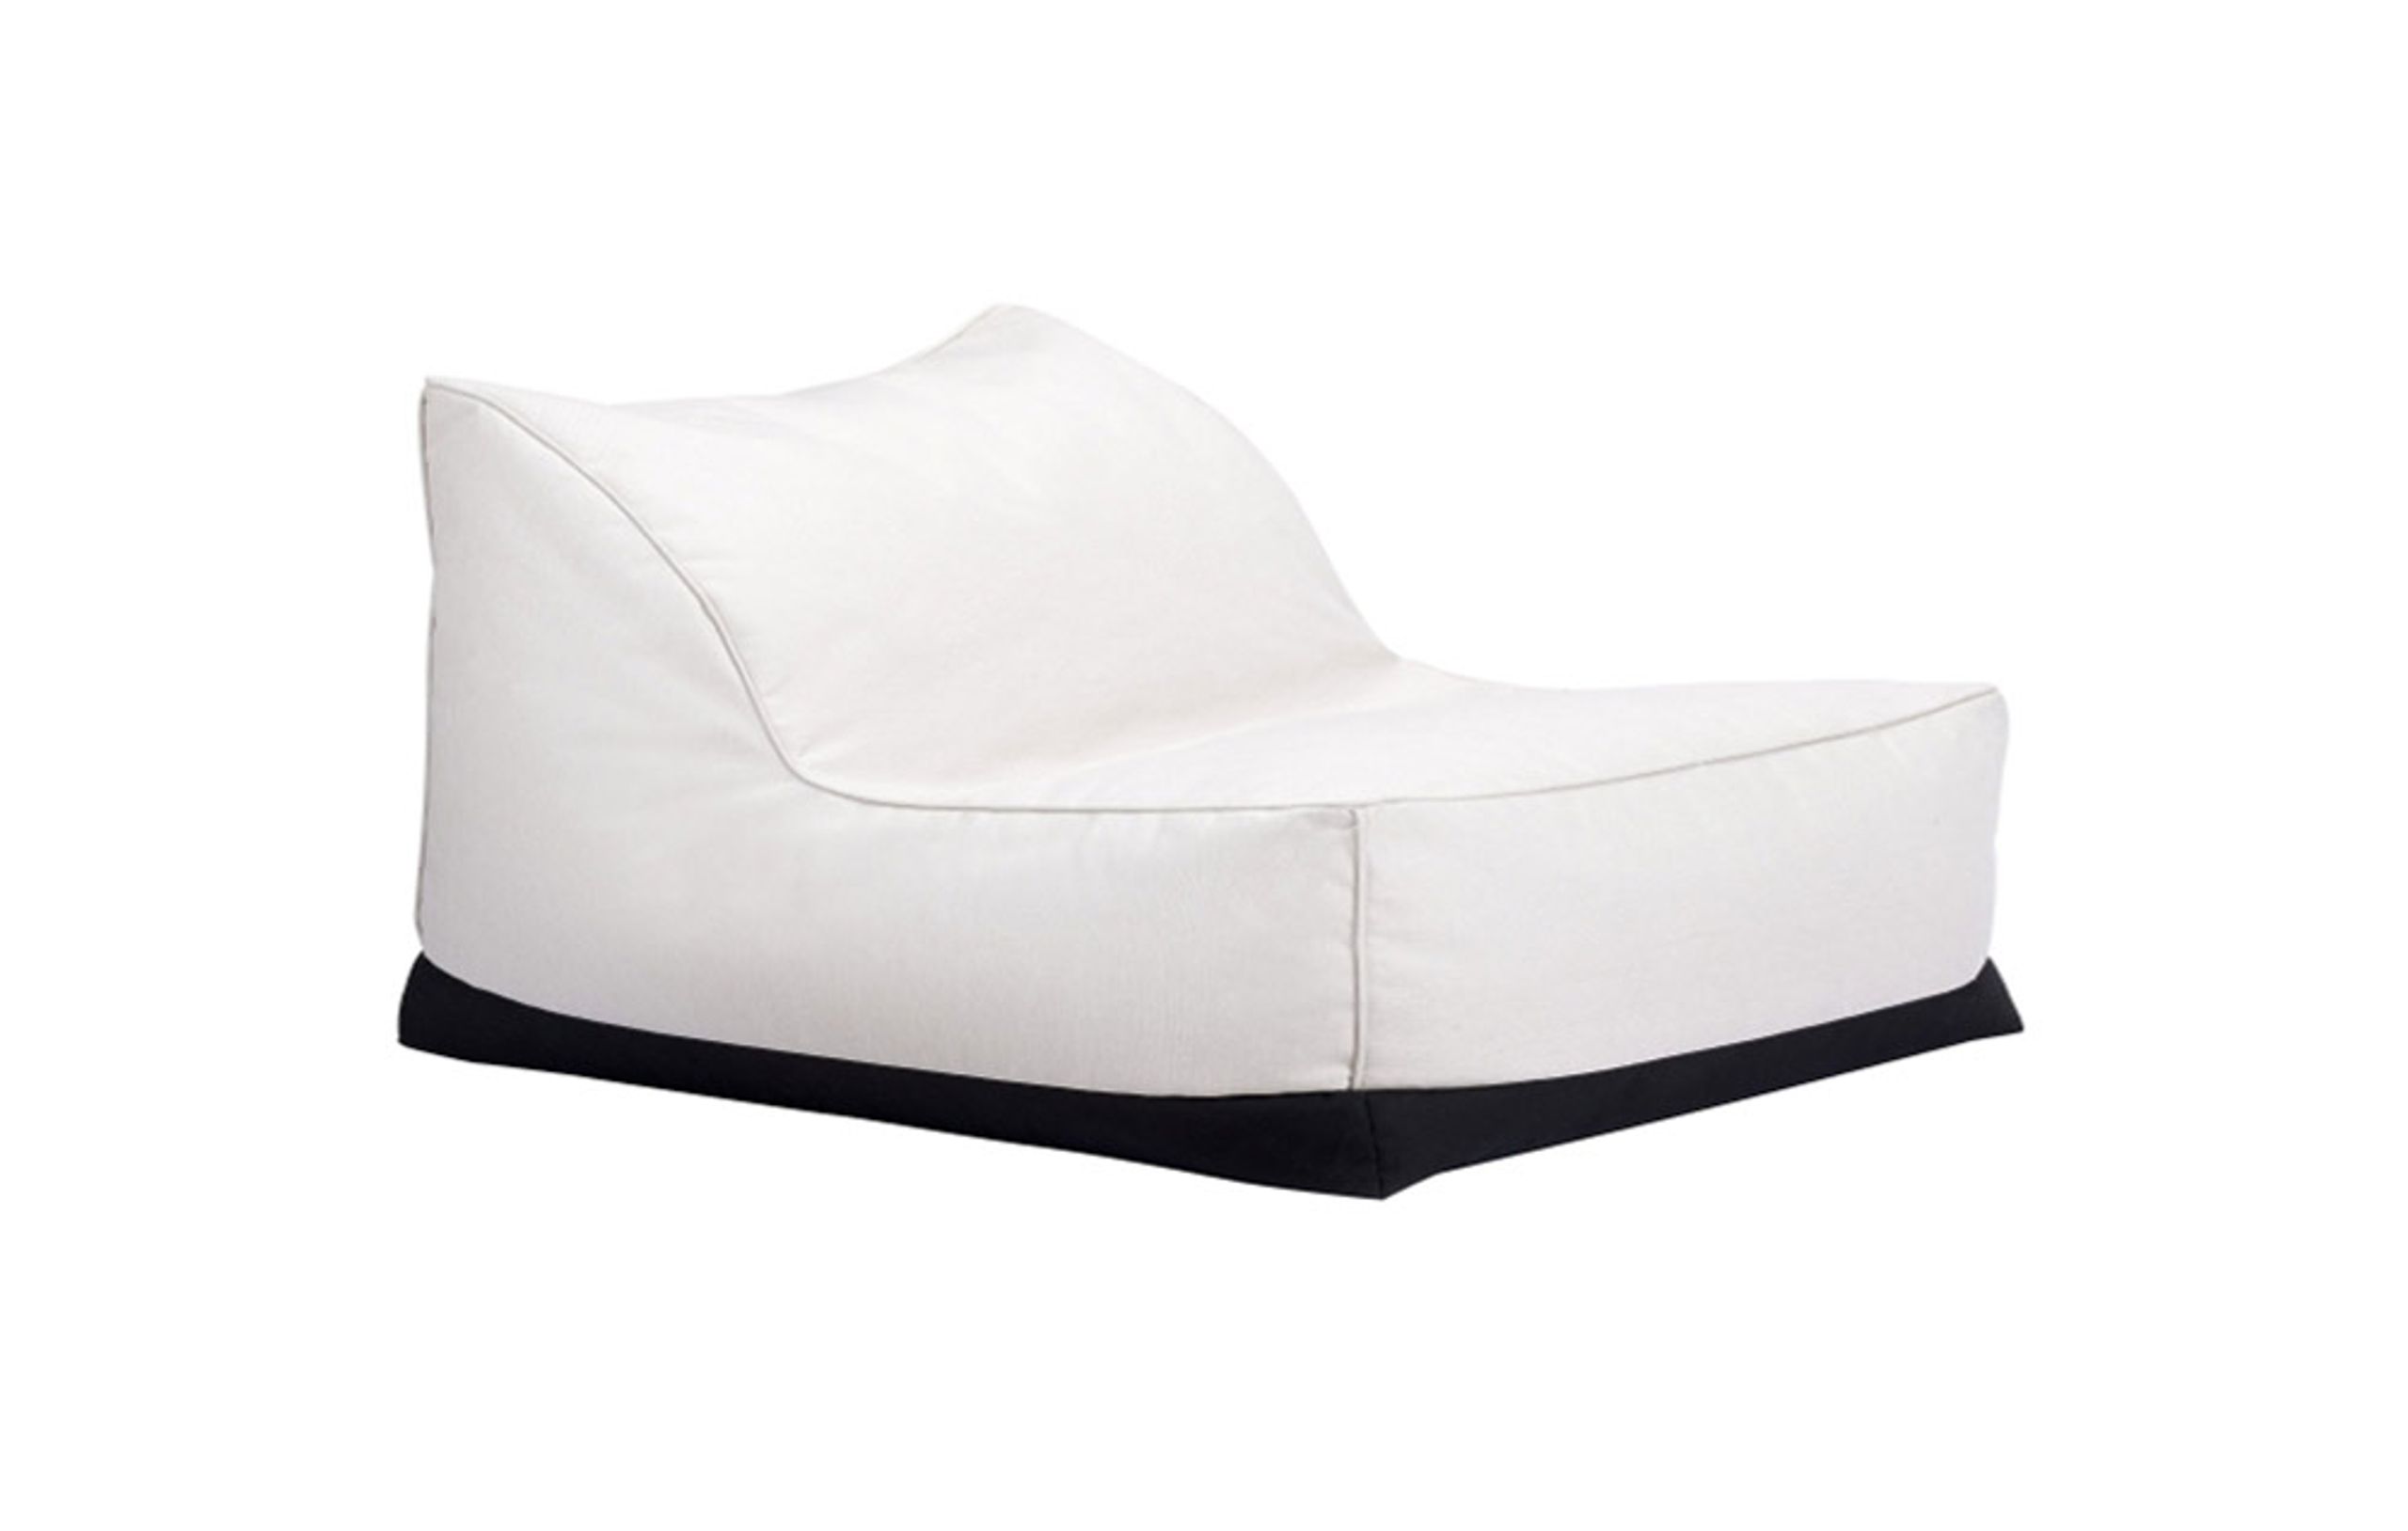 NORR11 - Chaise - Storm Lounge - Fabric: Sunbrella Natté: Linen Chalk - Medium